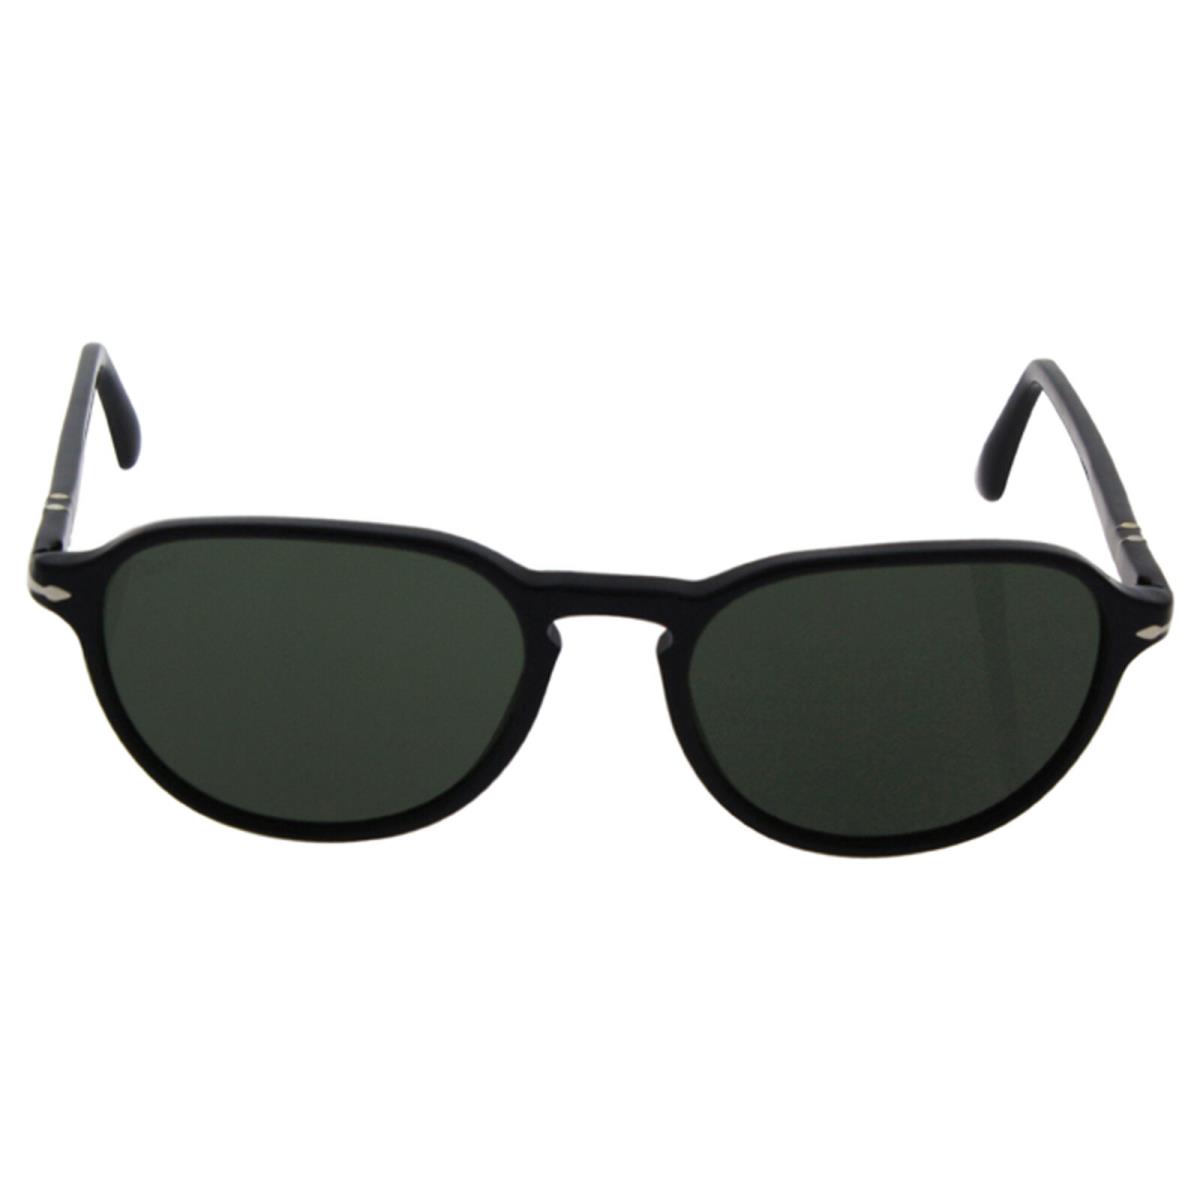 Persol PO3053S 9014-31 - Black-green 54-19-145 mm 54-19-145 mm Sunglasses